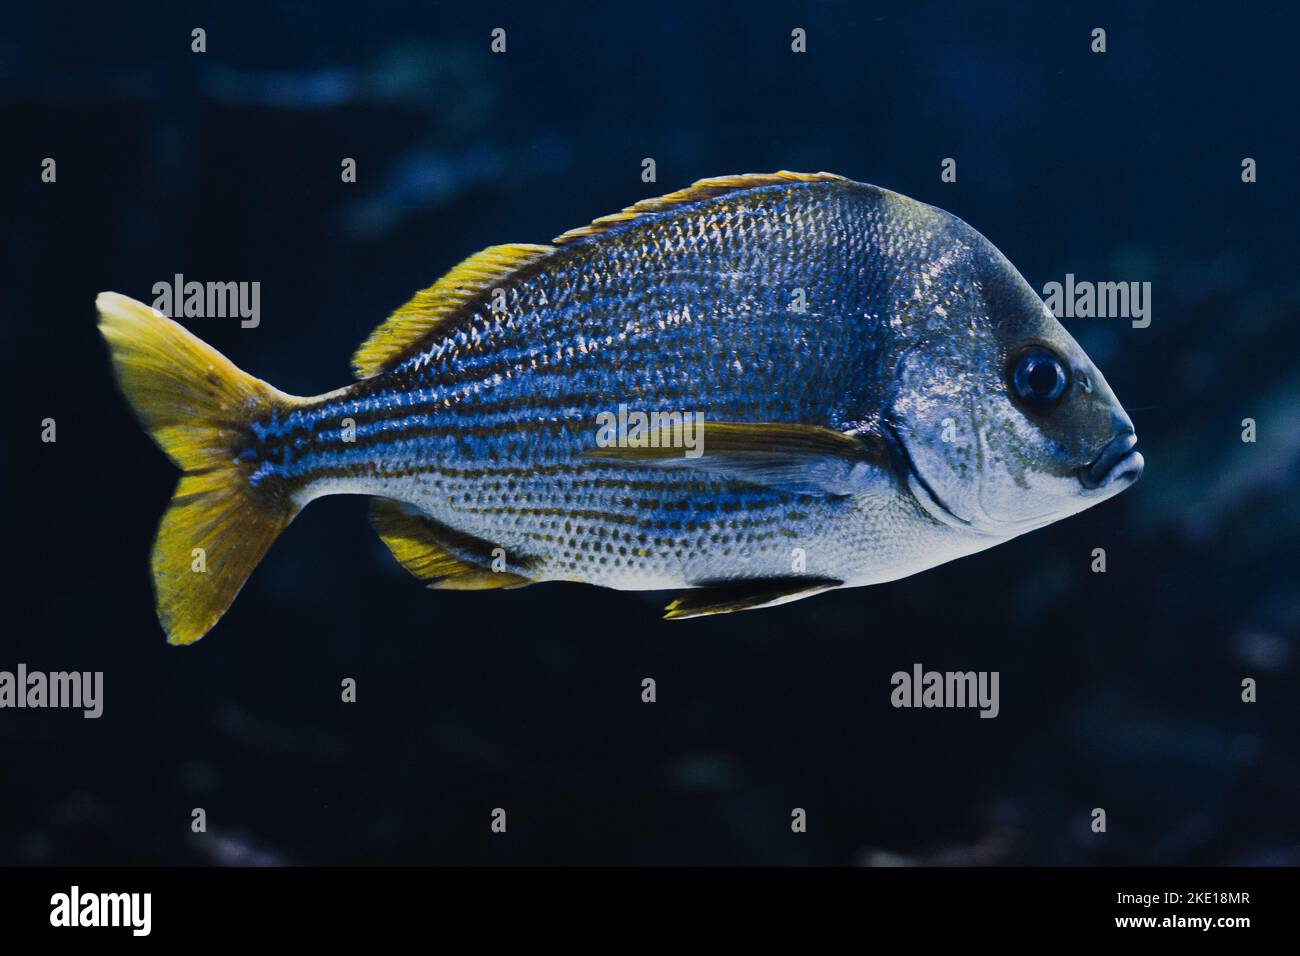 Primo piano di un pesce gigante dalle aline gialle in un acquario con acqua blu e fondo nero. Foto Stock